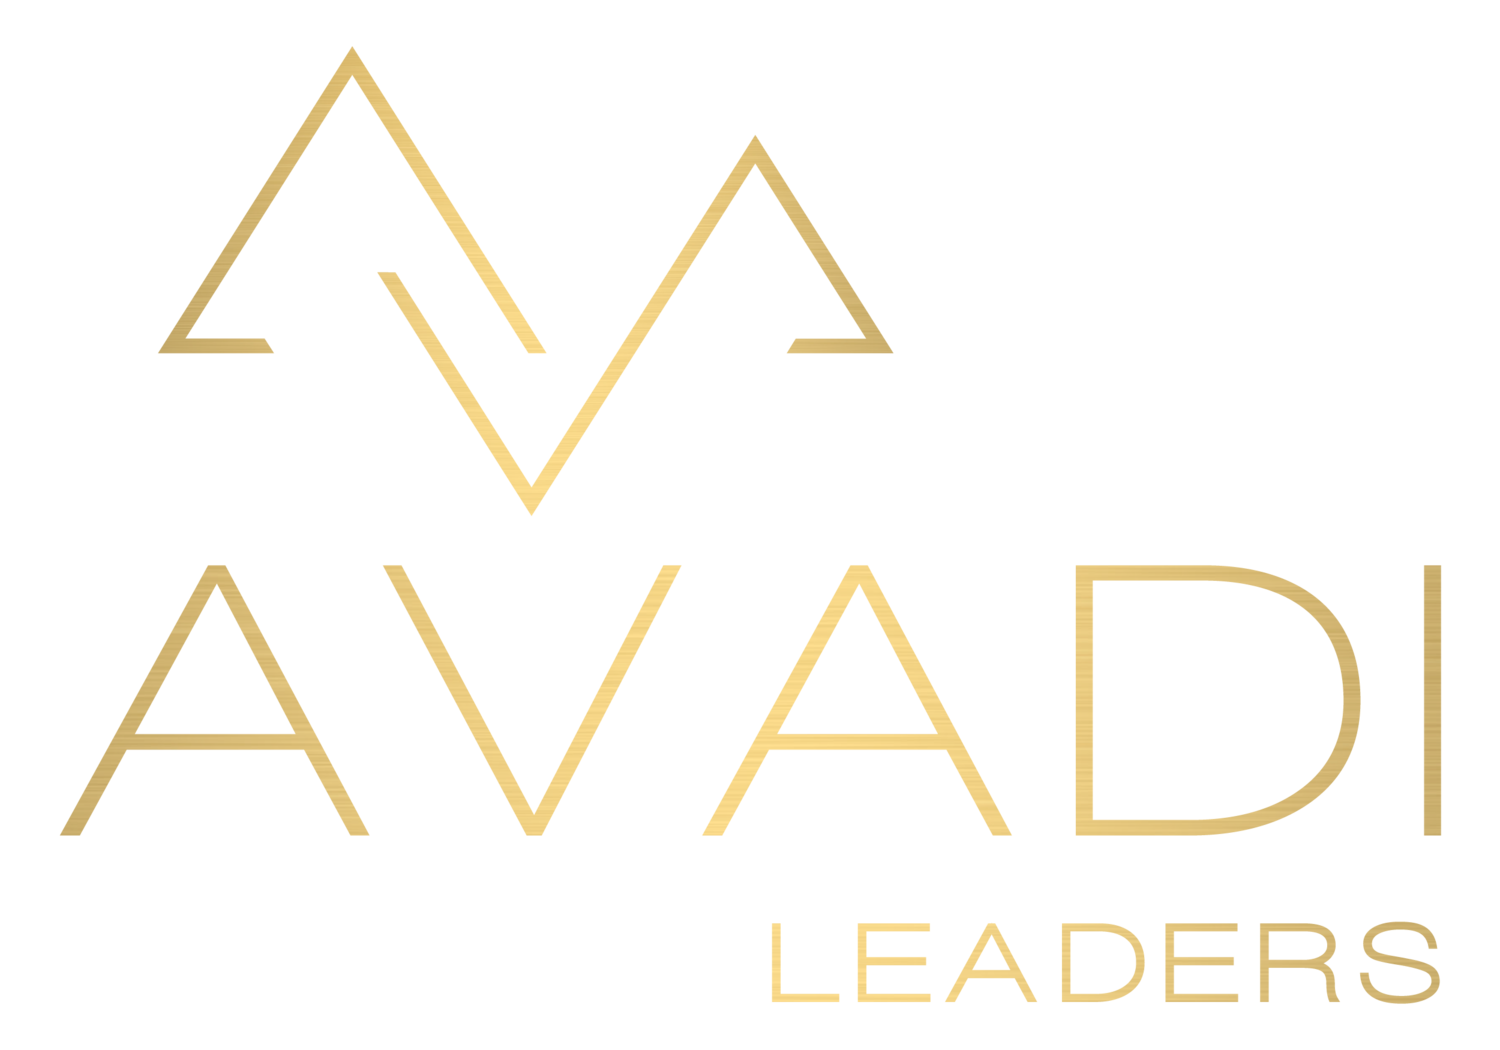 Avadi Leaders